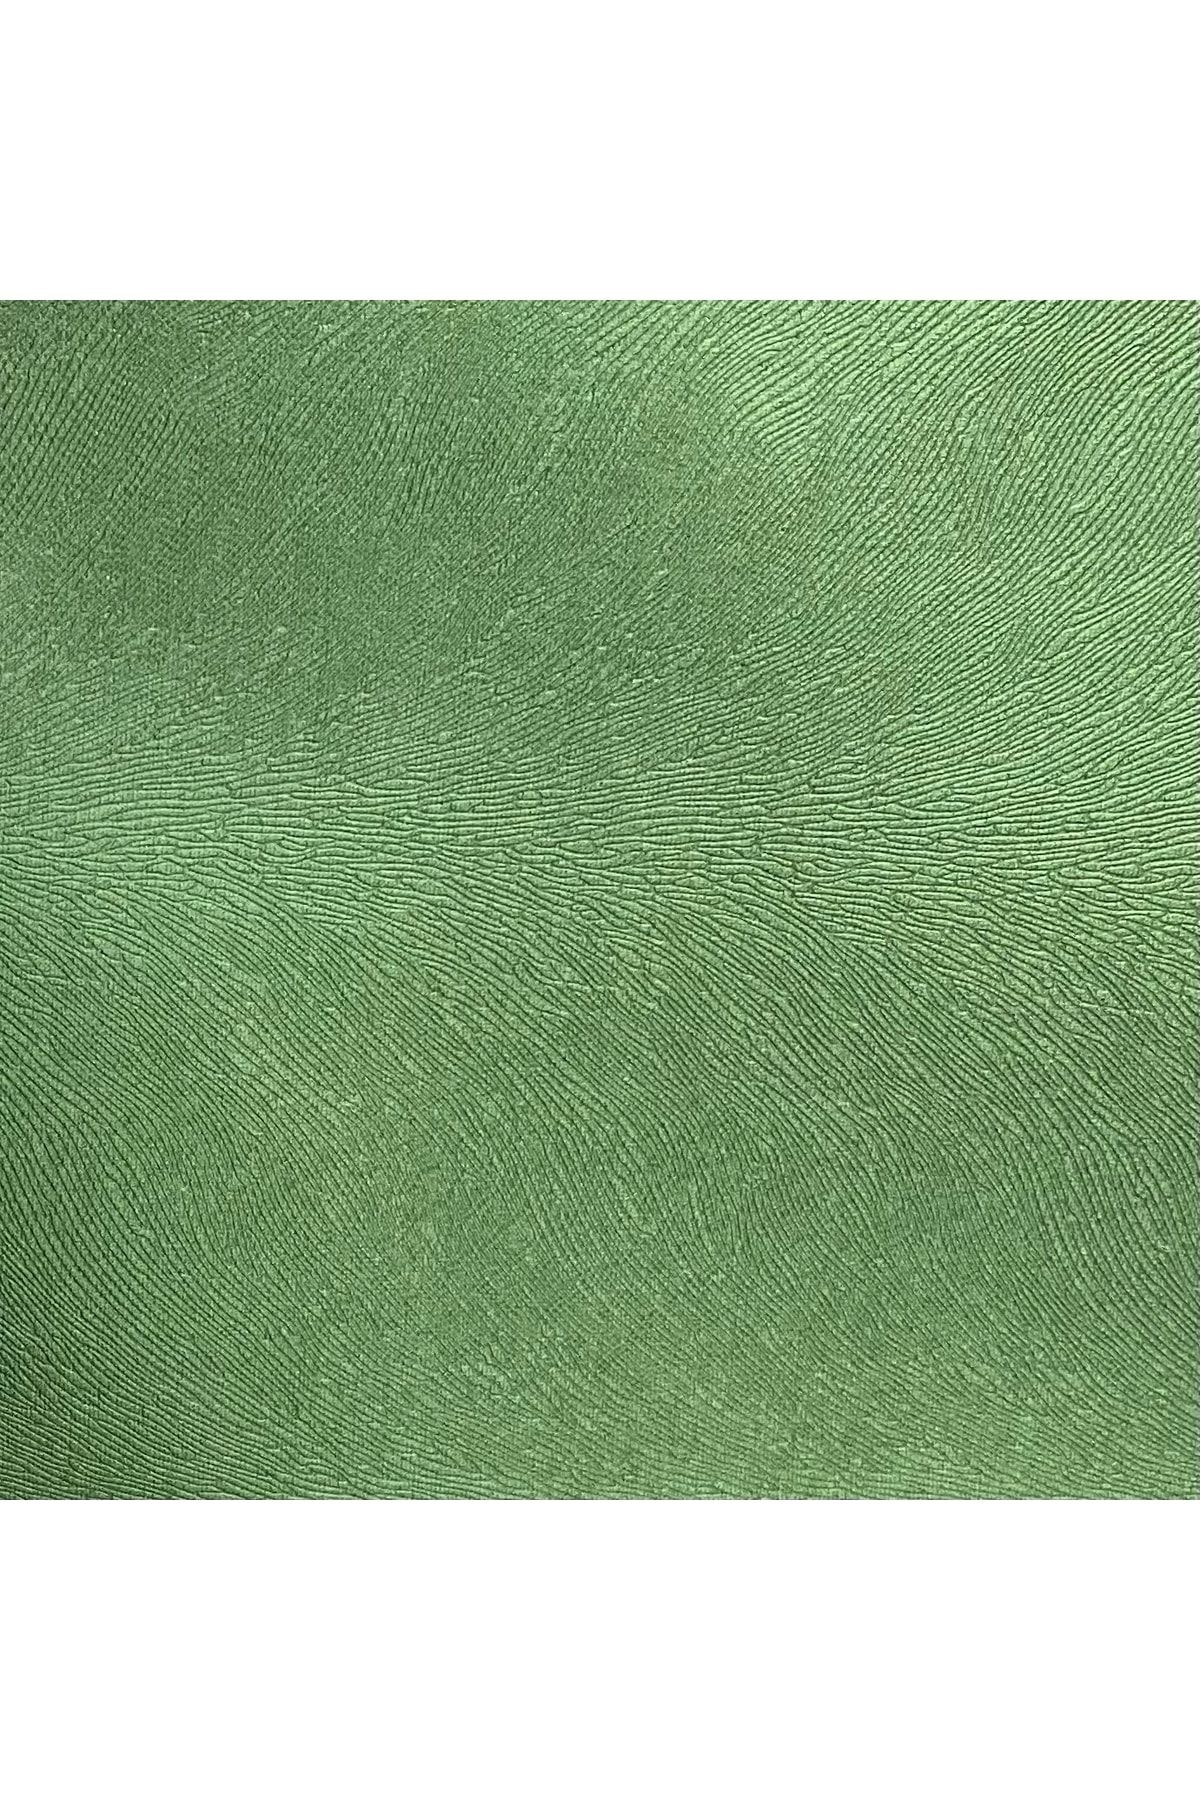 Bakırcı Kumaş Tay Tüyü Premıum Döşemelik Kumaş Yeşil Taytüyü